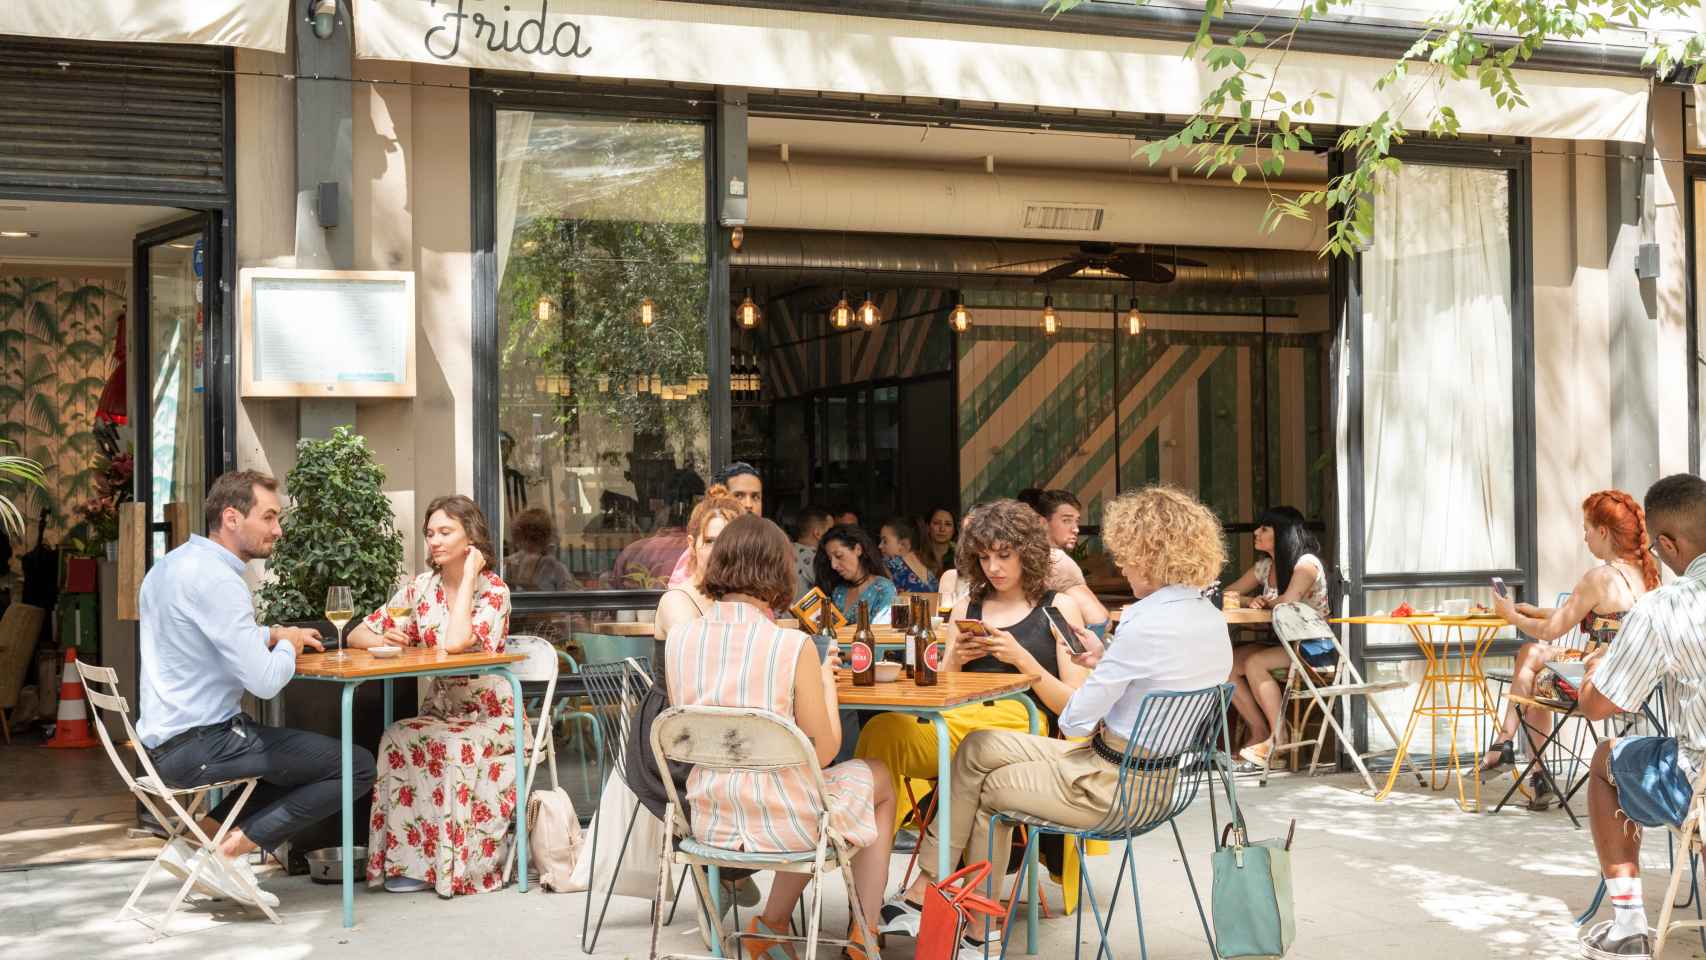 El restaurante Frida, uno de los lugares que forman parte del itinerario.